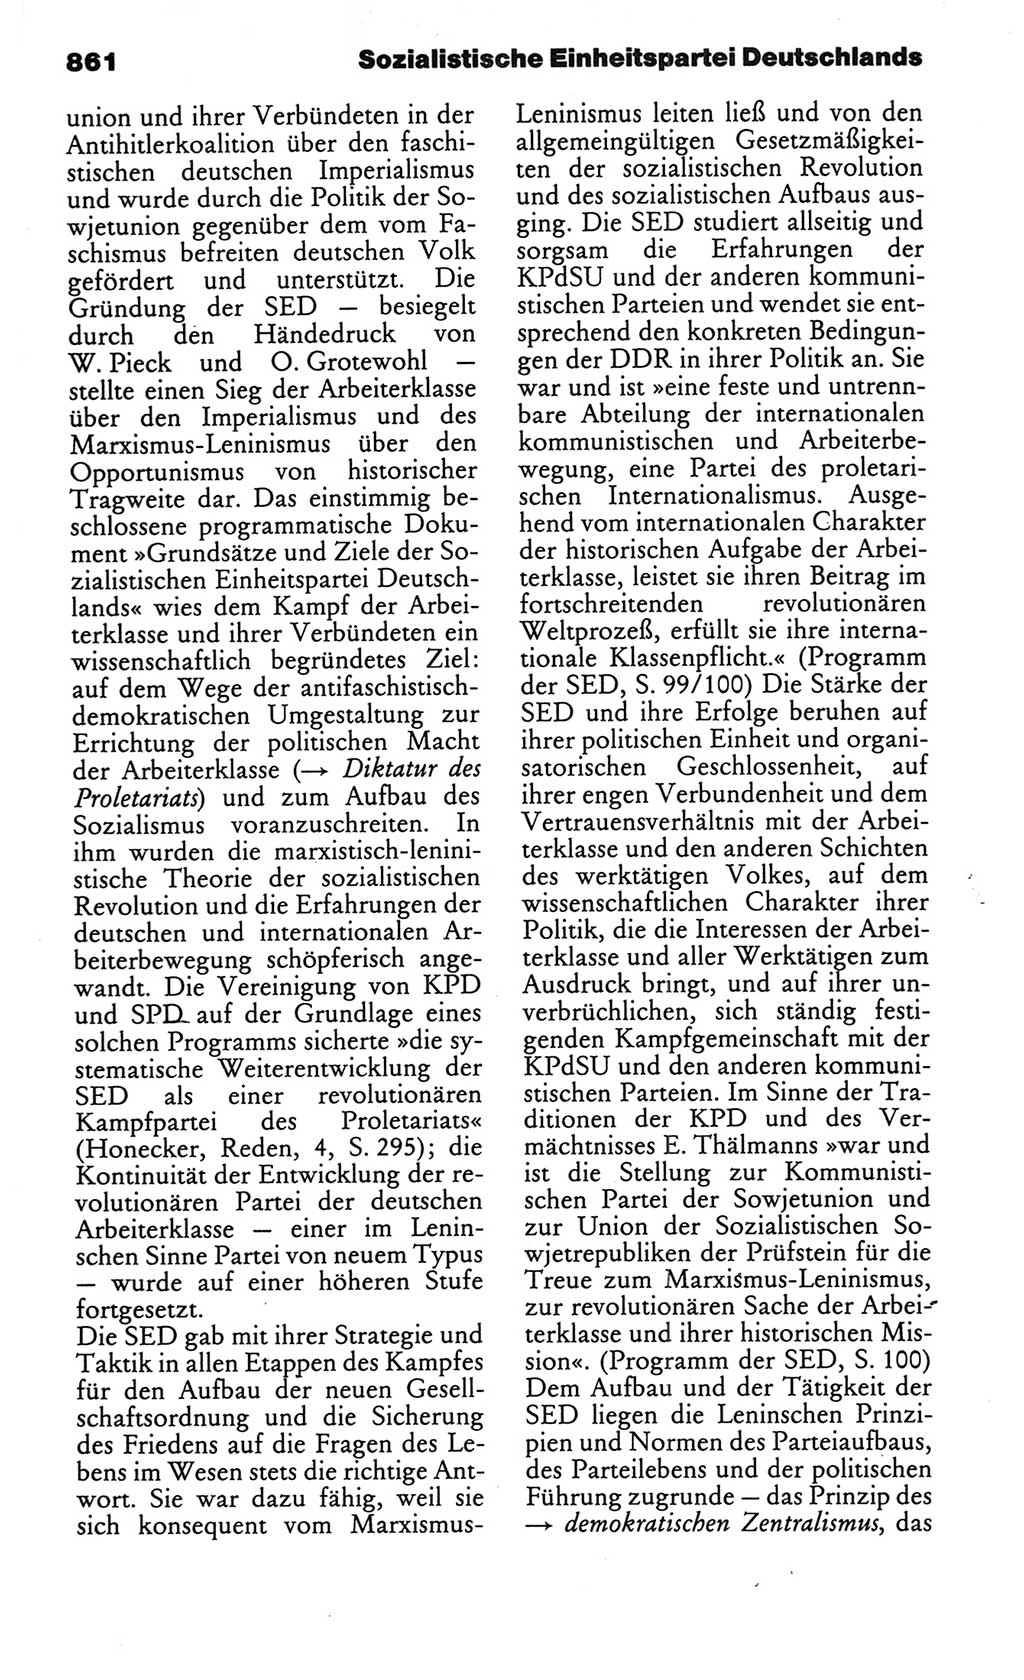 Kleines politisches Wörterbuch [Deutsche Demokratische Republik (DDR)] 1986, Seite 861 (Kl. pol. Wb. DDR 1986, S. 861)